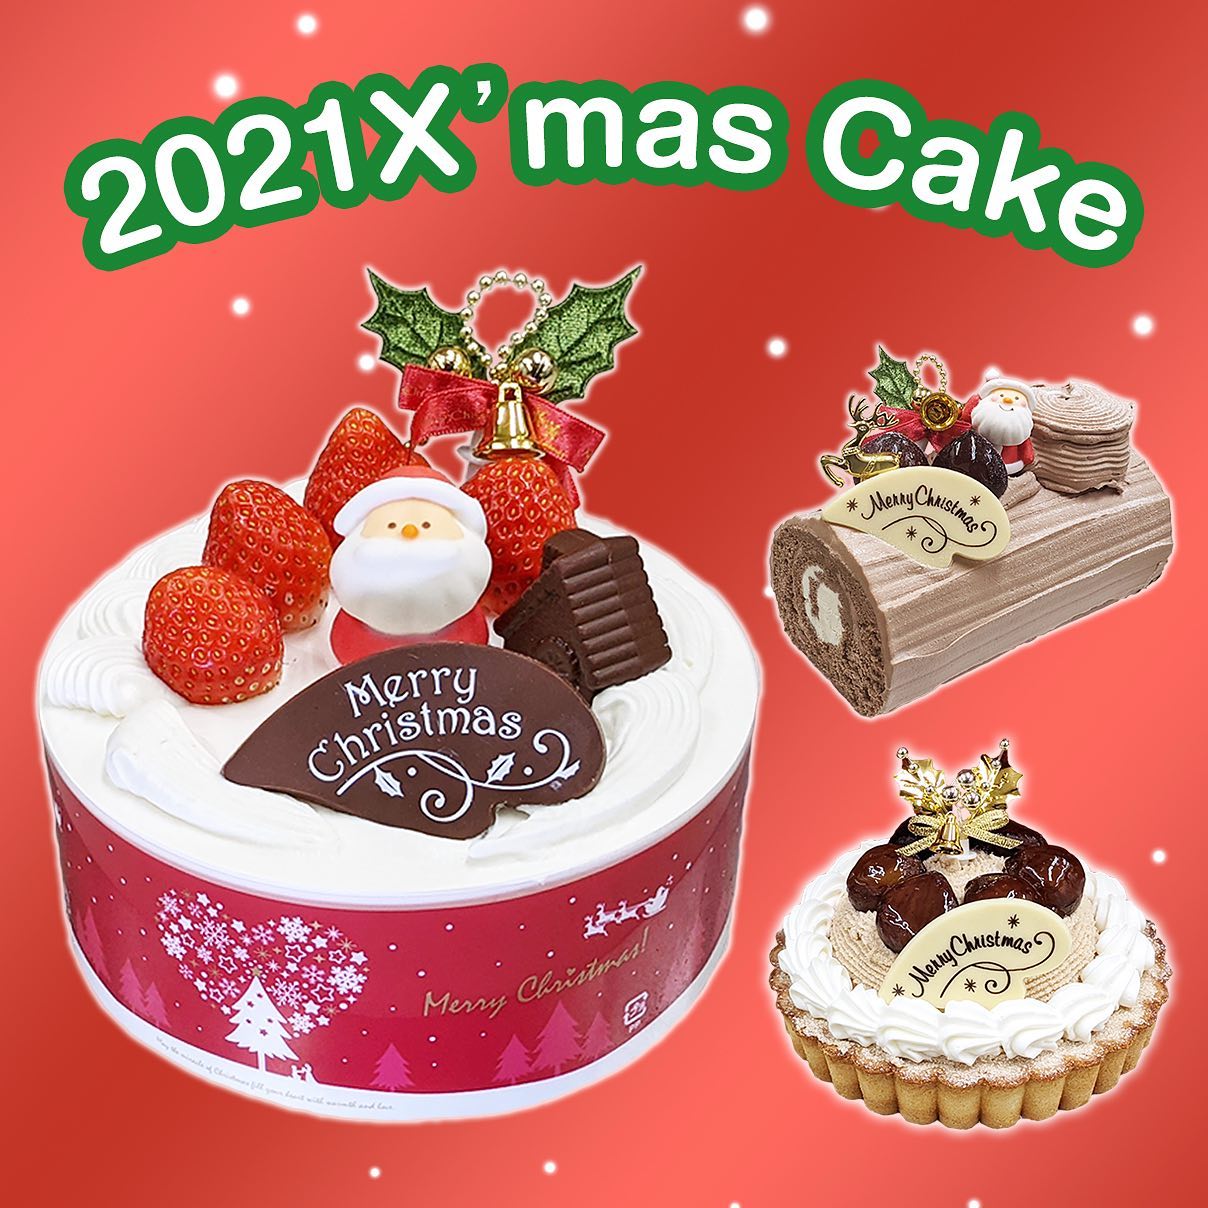 こんにちは！CAKE EXPRESSですクリスマスまであと1か月ですね店頭お受取りのクリスマスケーキのご予約受付がスタートしています️InstagramのDM、LINE、お電話からもお受けしていますのでお気軽にお問い合わせ下さい️公式LINEアカウント検索ID@cake-exressTEL:0883-35-7823#ケーキエクスプレス #CAKEEXPRESS#徳島県 #スイーツ好き #スイーツ #ケーキ#スイーツ好きな人と繋がりたい #クリスマスケーキ予約 #クリスマス#クリスマスケーキ #クリスマスケーキ2021 #専門店 #生クリームケーキ #タルトケーキ #タルト#ブッシュドノエル #お祝い#xmas#christmas#xmasケーキ - from Instagram